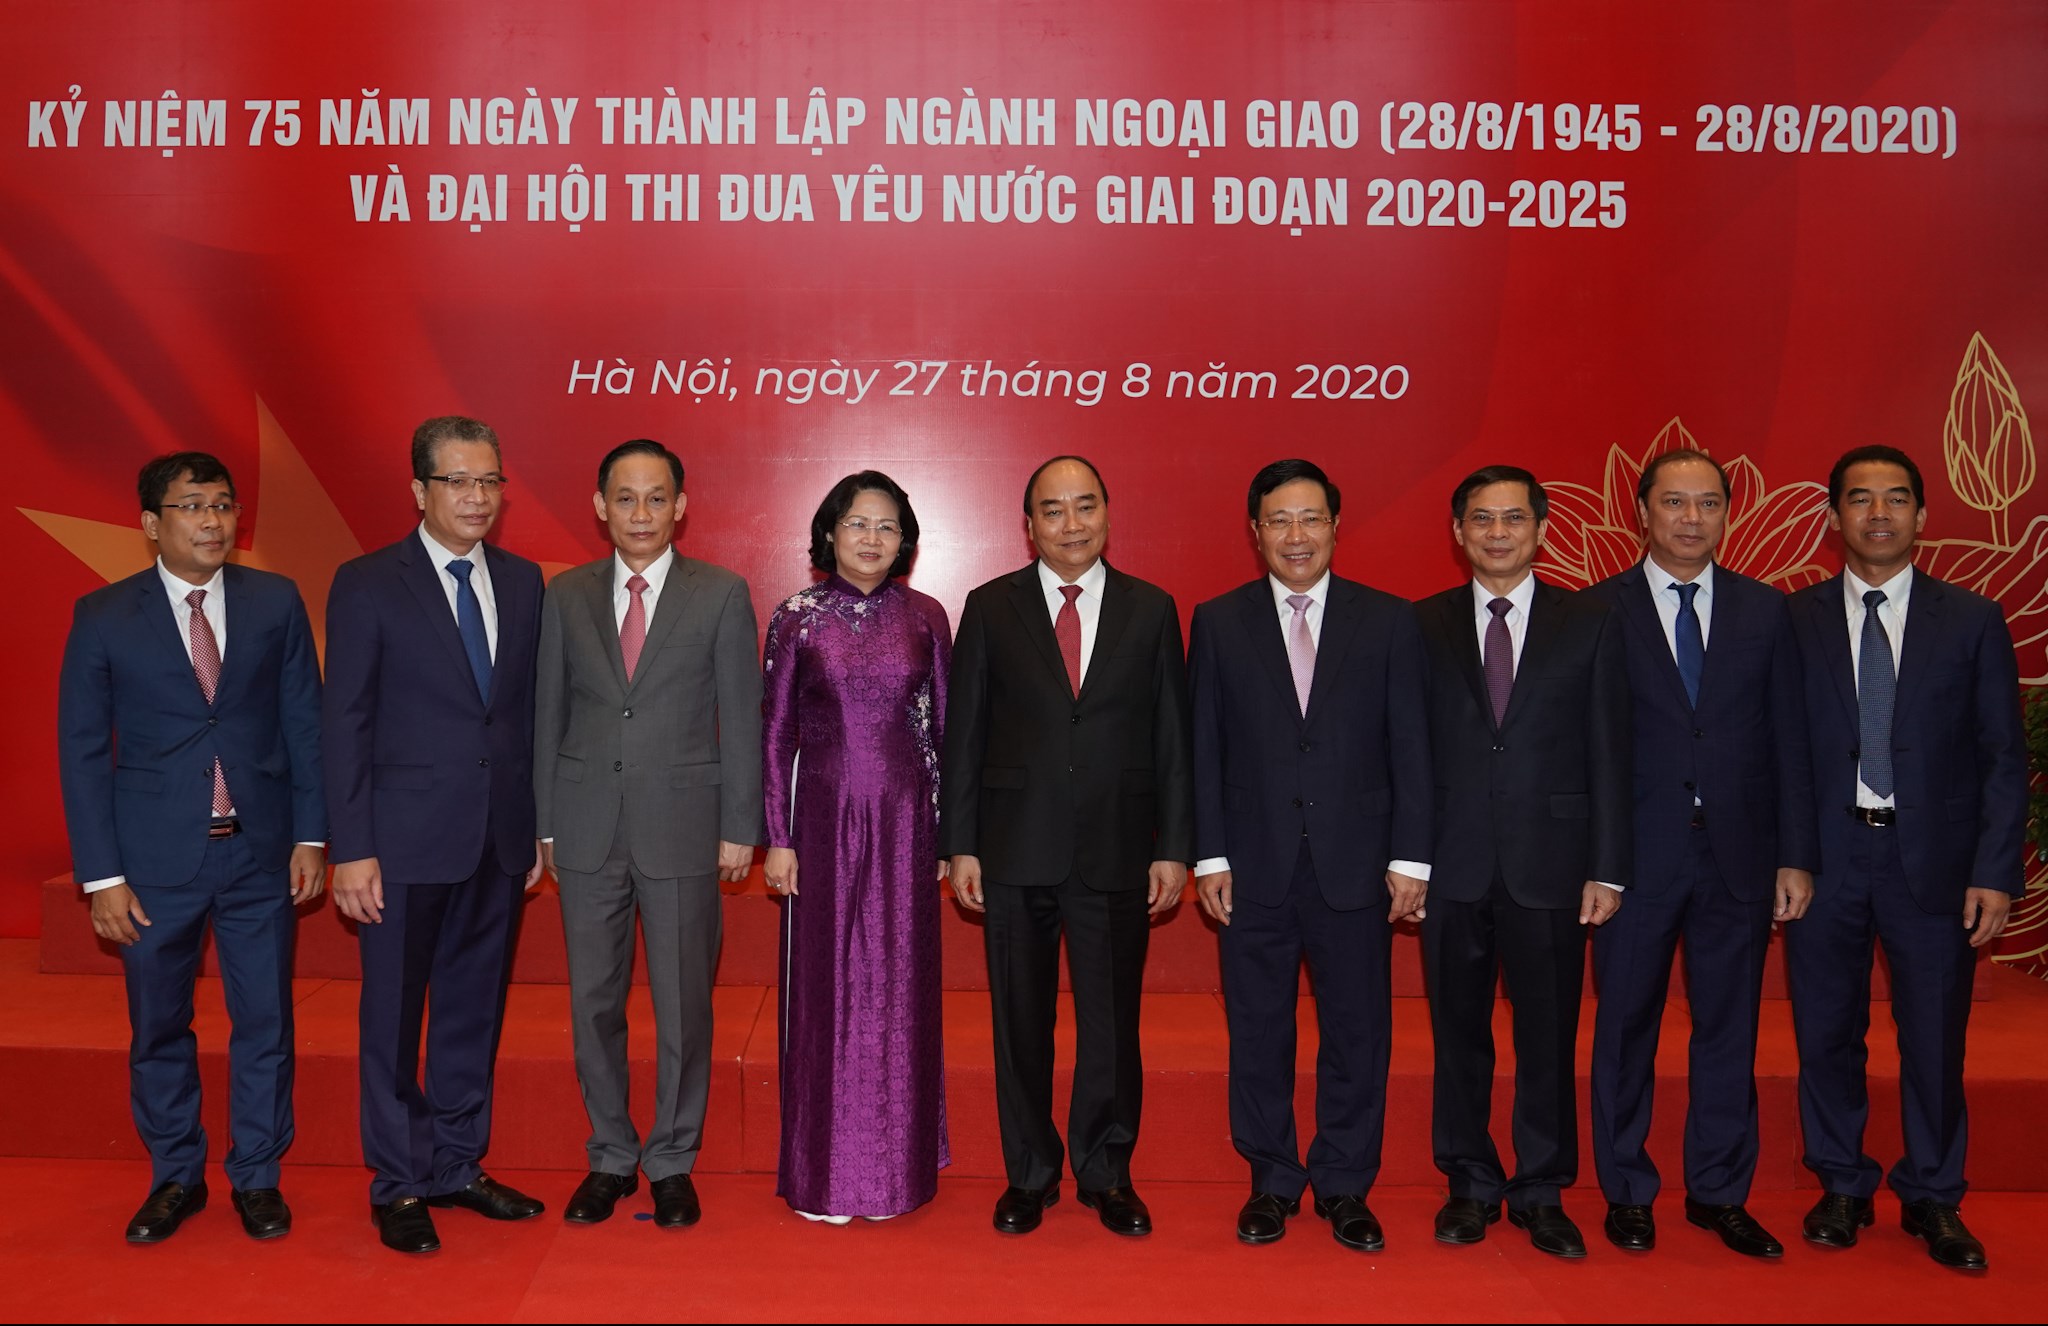 Thủ tướng dự kỷ niệm 75 năm thành lập ngành ngoại giao Việt Nam 1